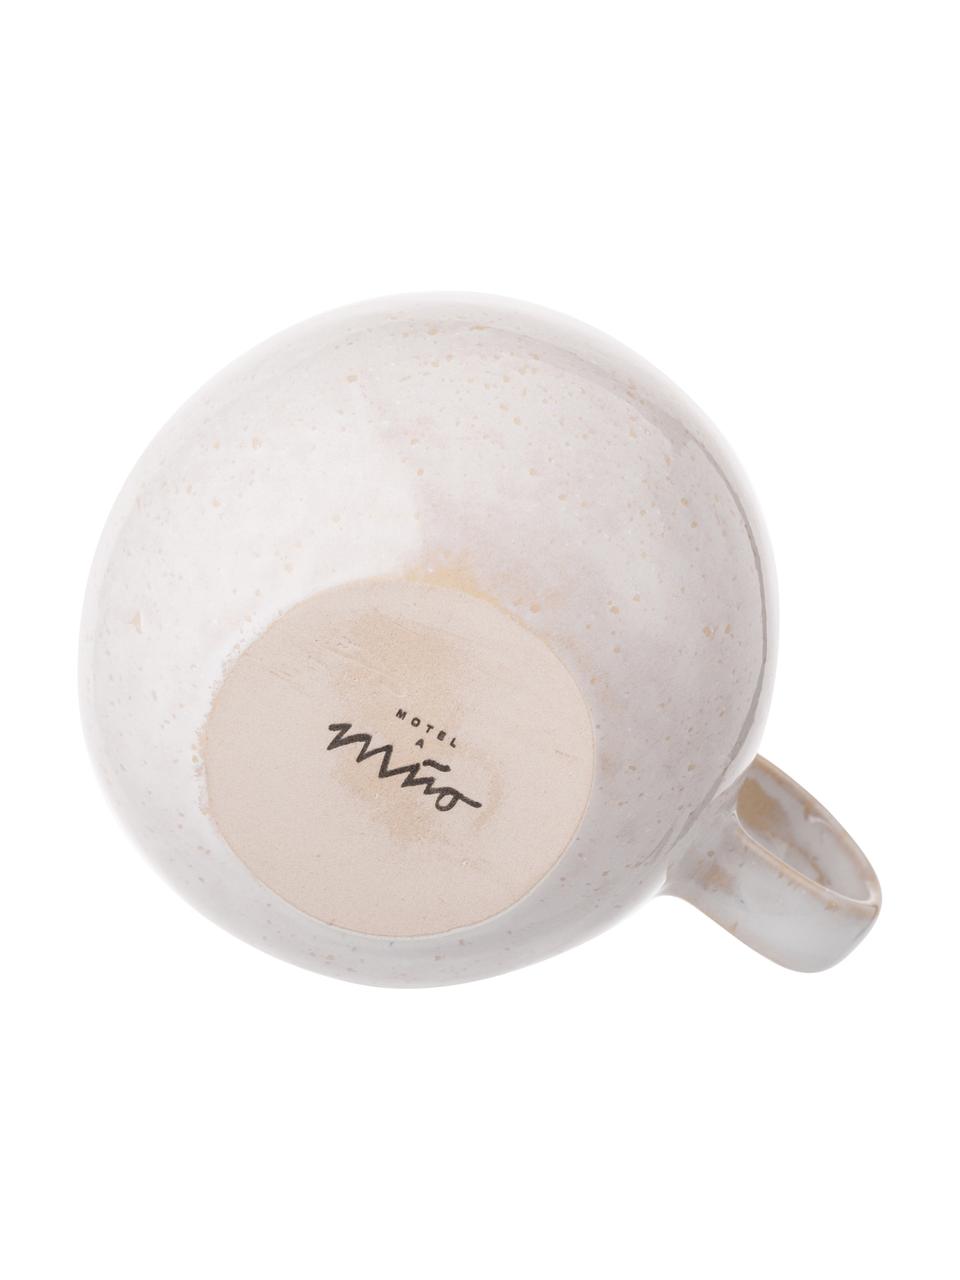 Tasse à thé peinte à la main Areia, 2 pièces, Tons rouges, blanc cassé, beige clair